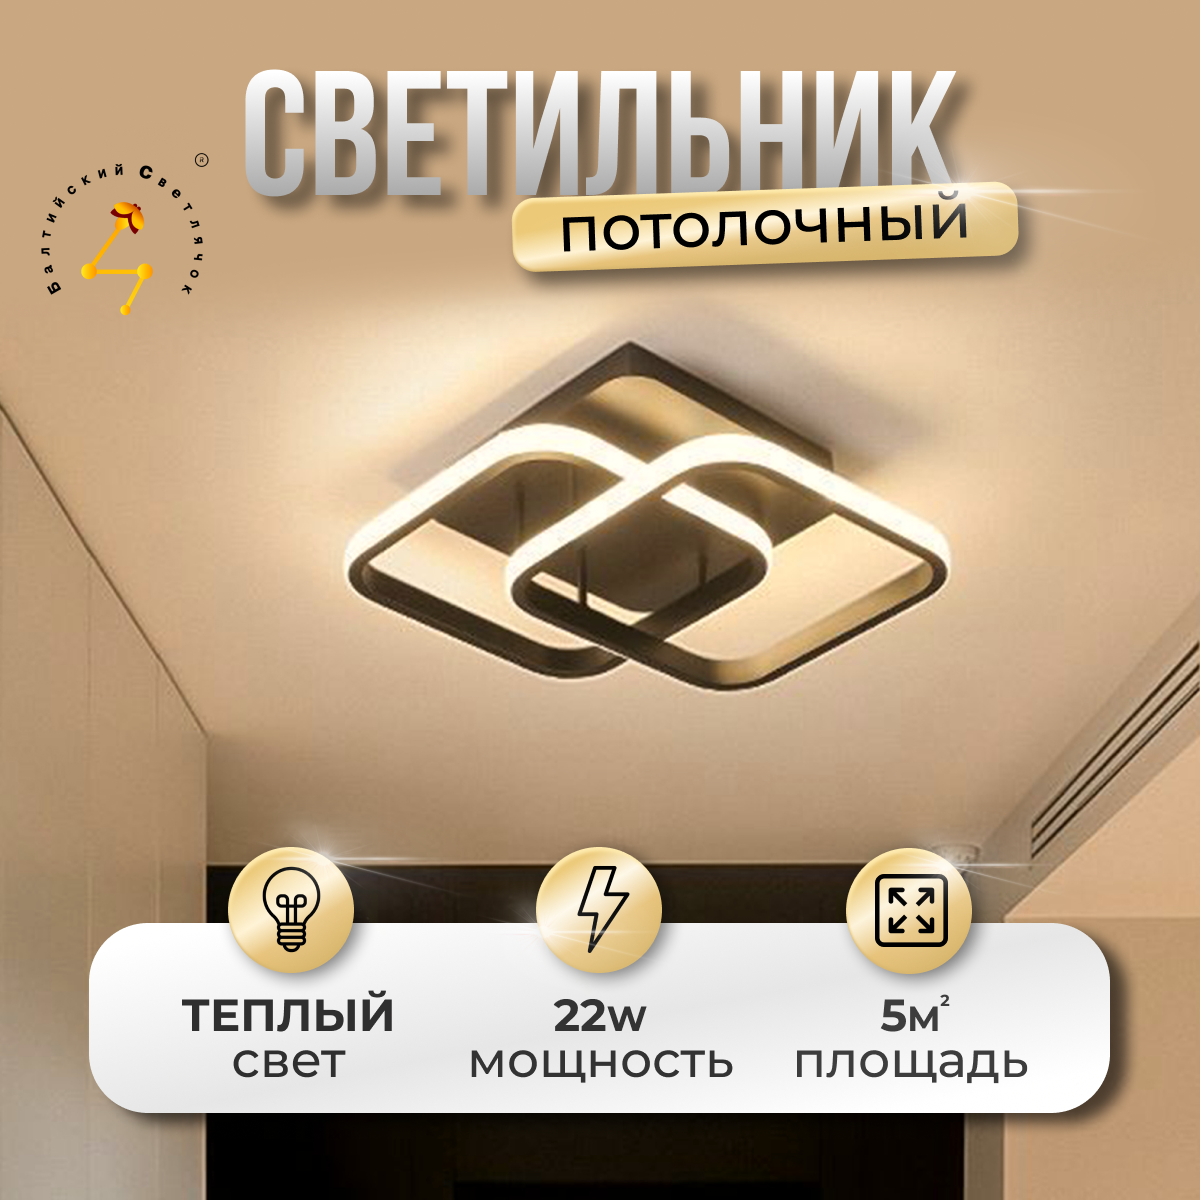 Светильник потолочный LED 22 Вт, теплый свет, Балтийский Светлячок, MC-1011T